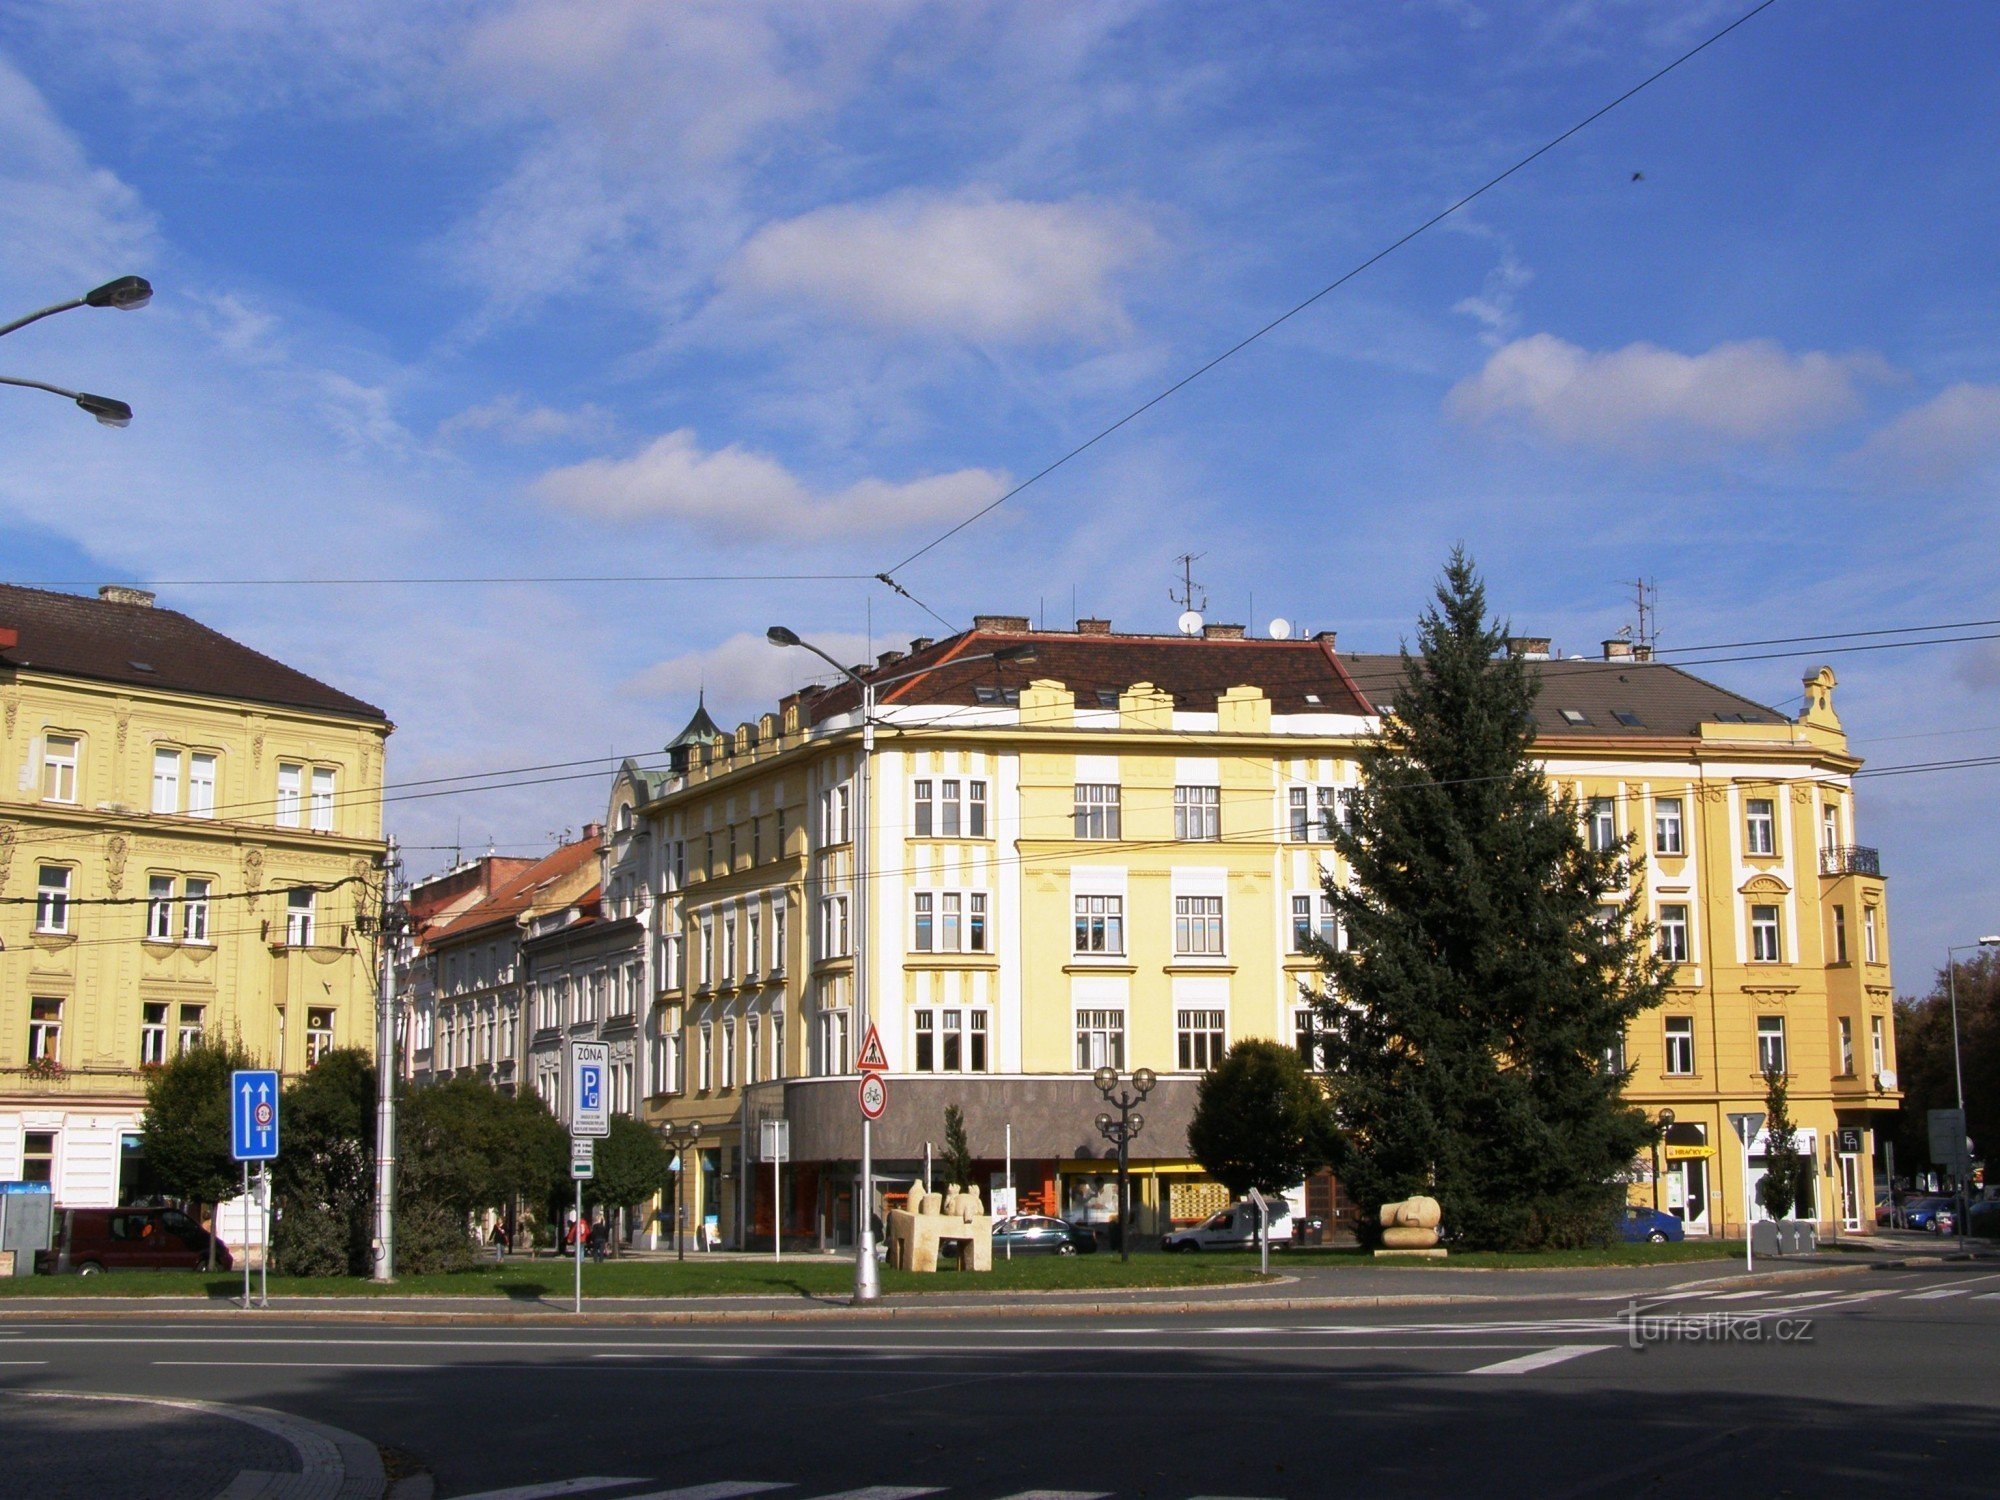 Hradec Králové - Frihedspladsen